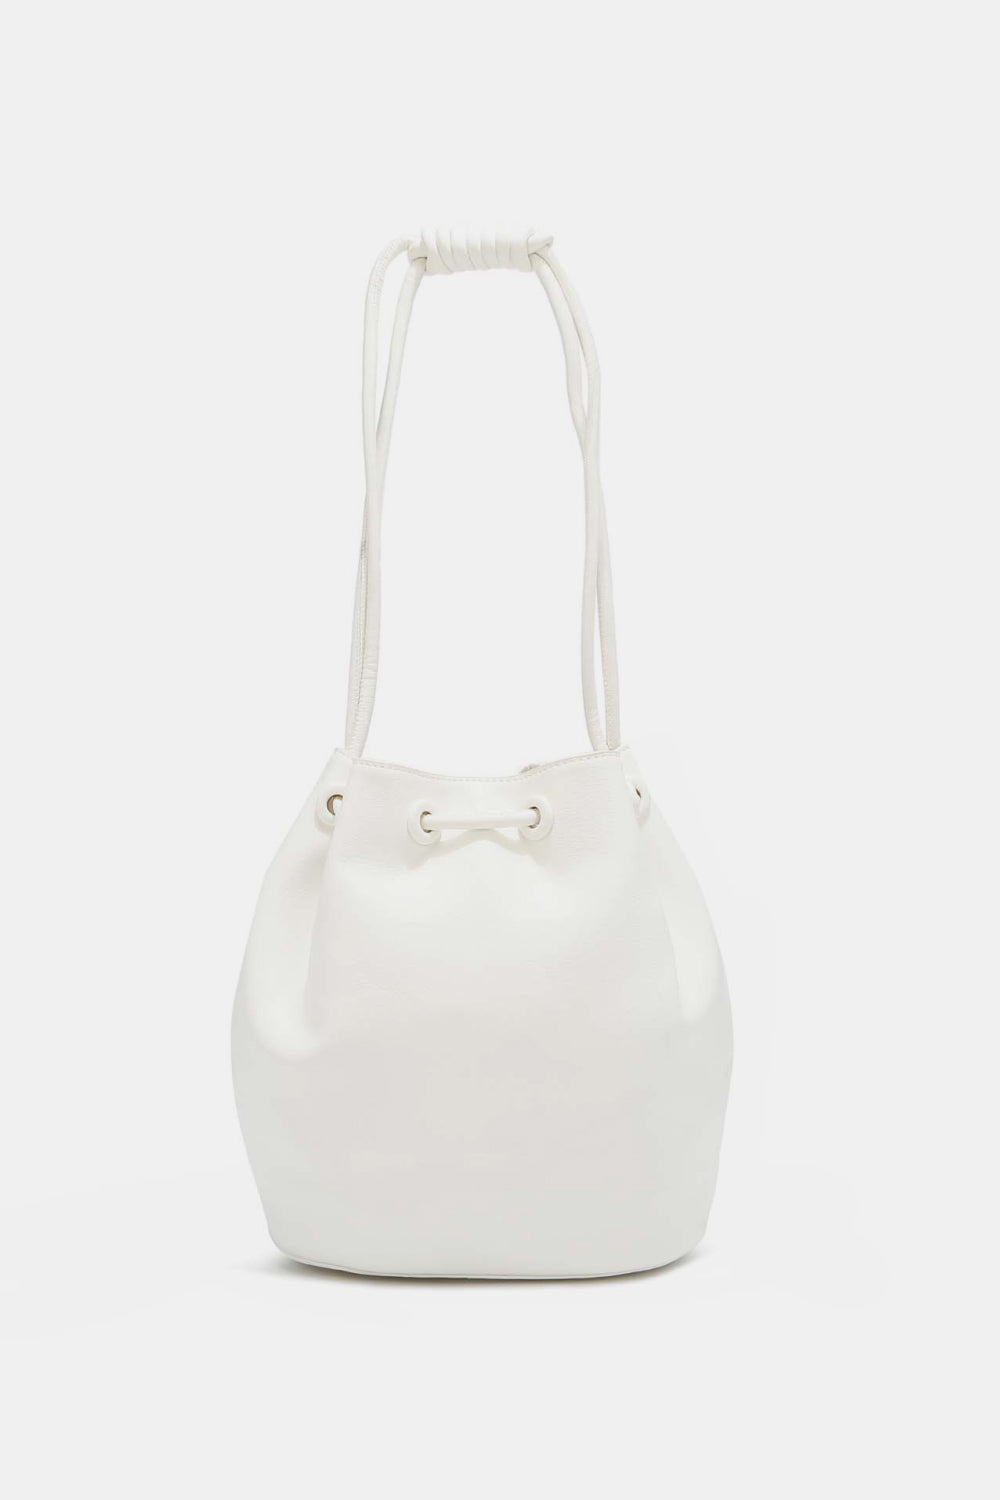 Nicole Lee USA Amy Studded Bucket Handbag  - Tigbul's Fashion